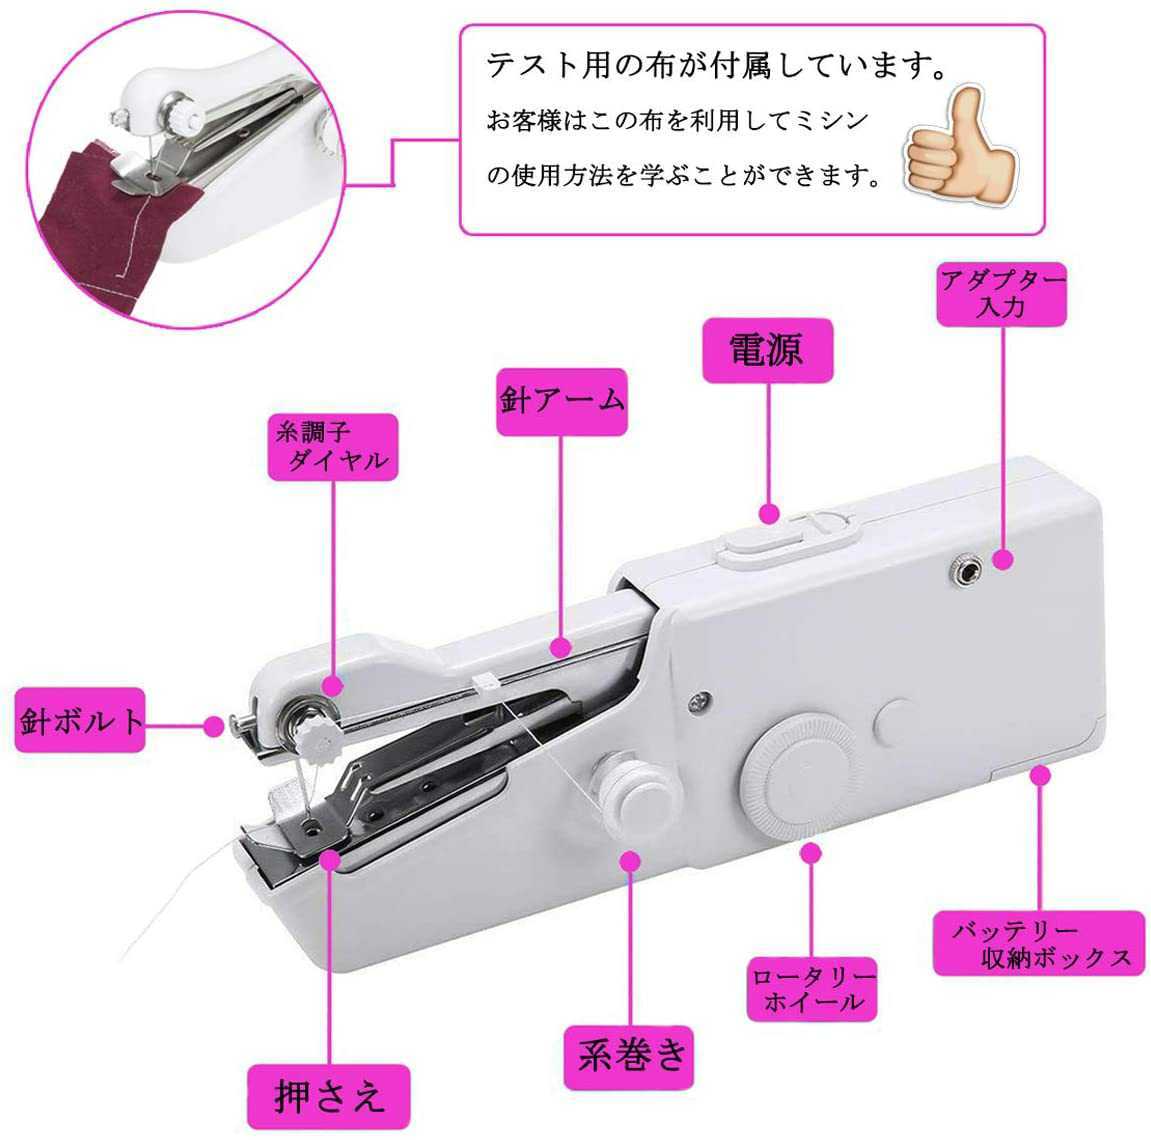 新品 コンパクトミシン 電動ミシン ハンドミシン ミニサイズ 使用簡単 携帯便利 手作り 縫い物 乾電池式 家庭用 日本語説明書付き